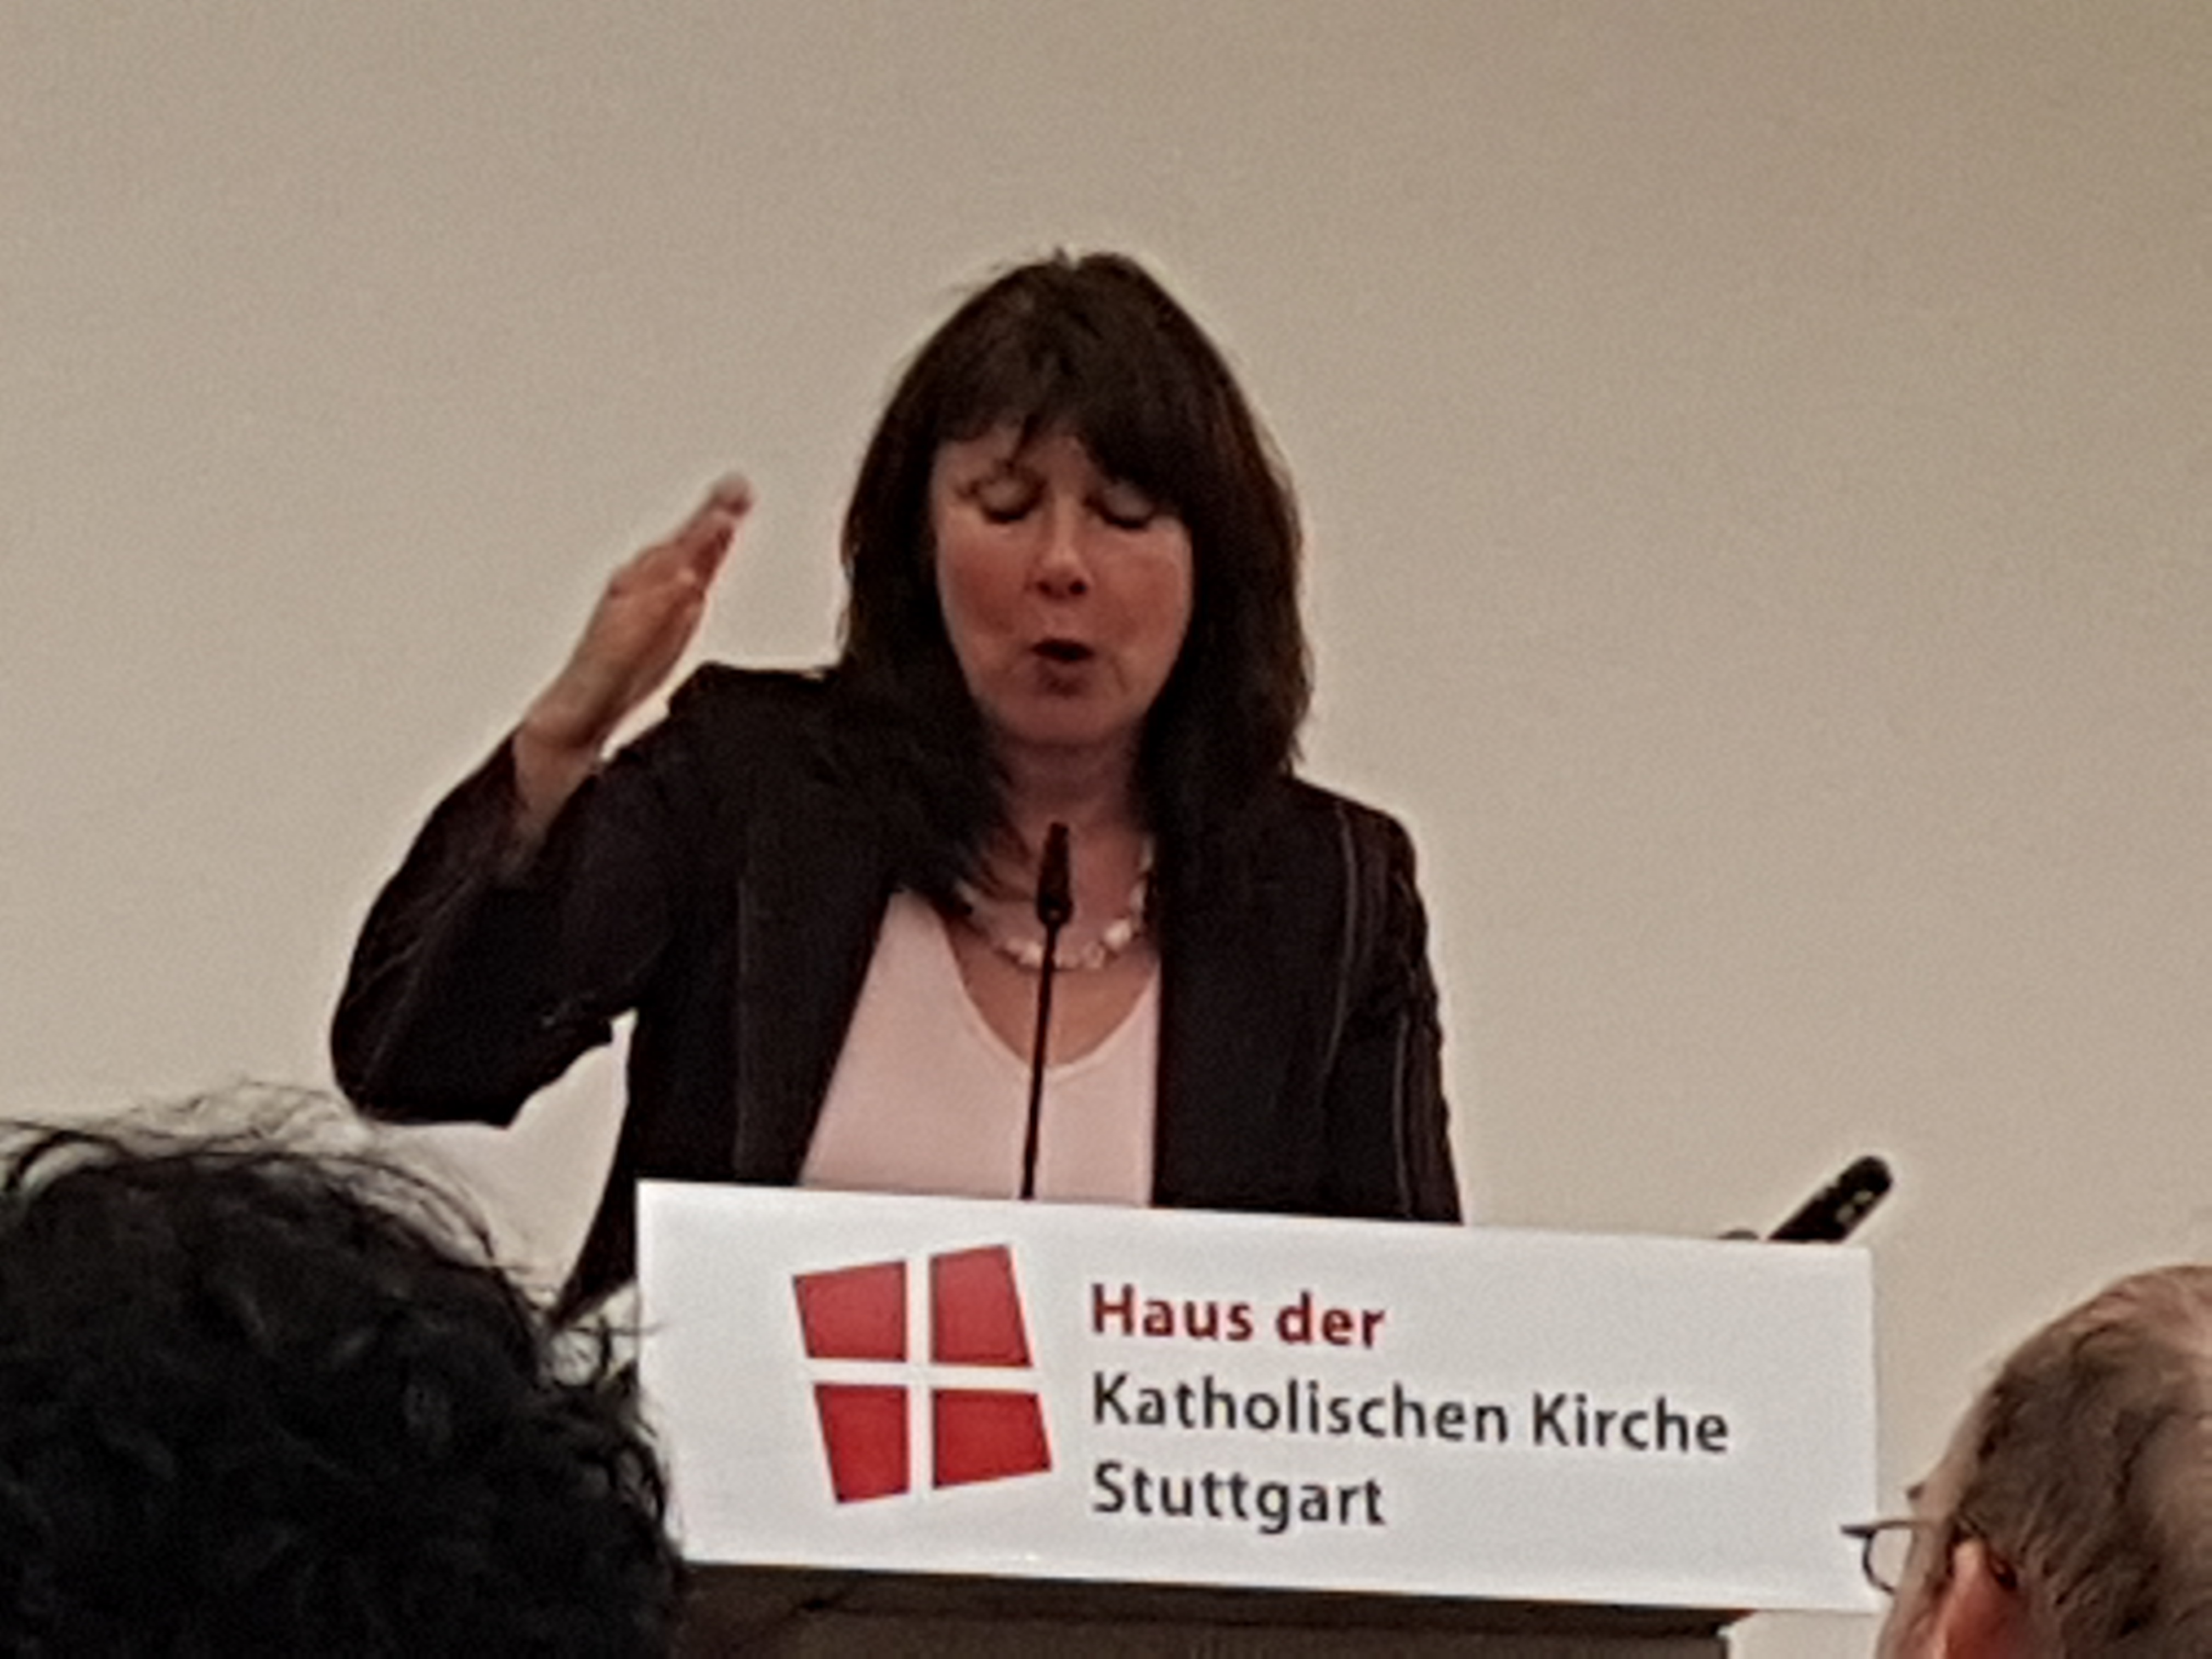 Frau Prof. Dr. Greif, Insitut für Pesonalmanagement an der Fachhochschule Nordwestschweiz hält einen packenden Vortrag über lebensphasenorientierte Personalentwicklung